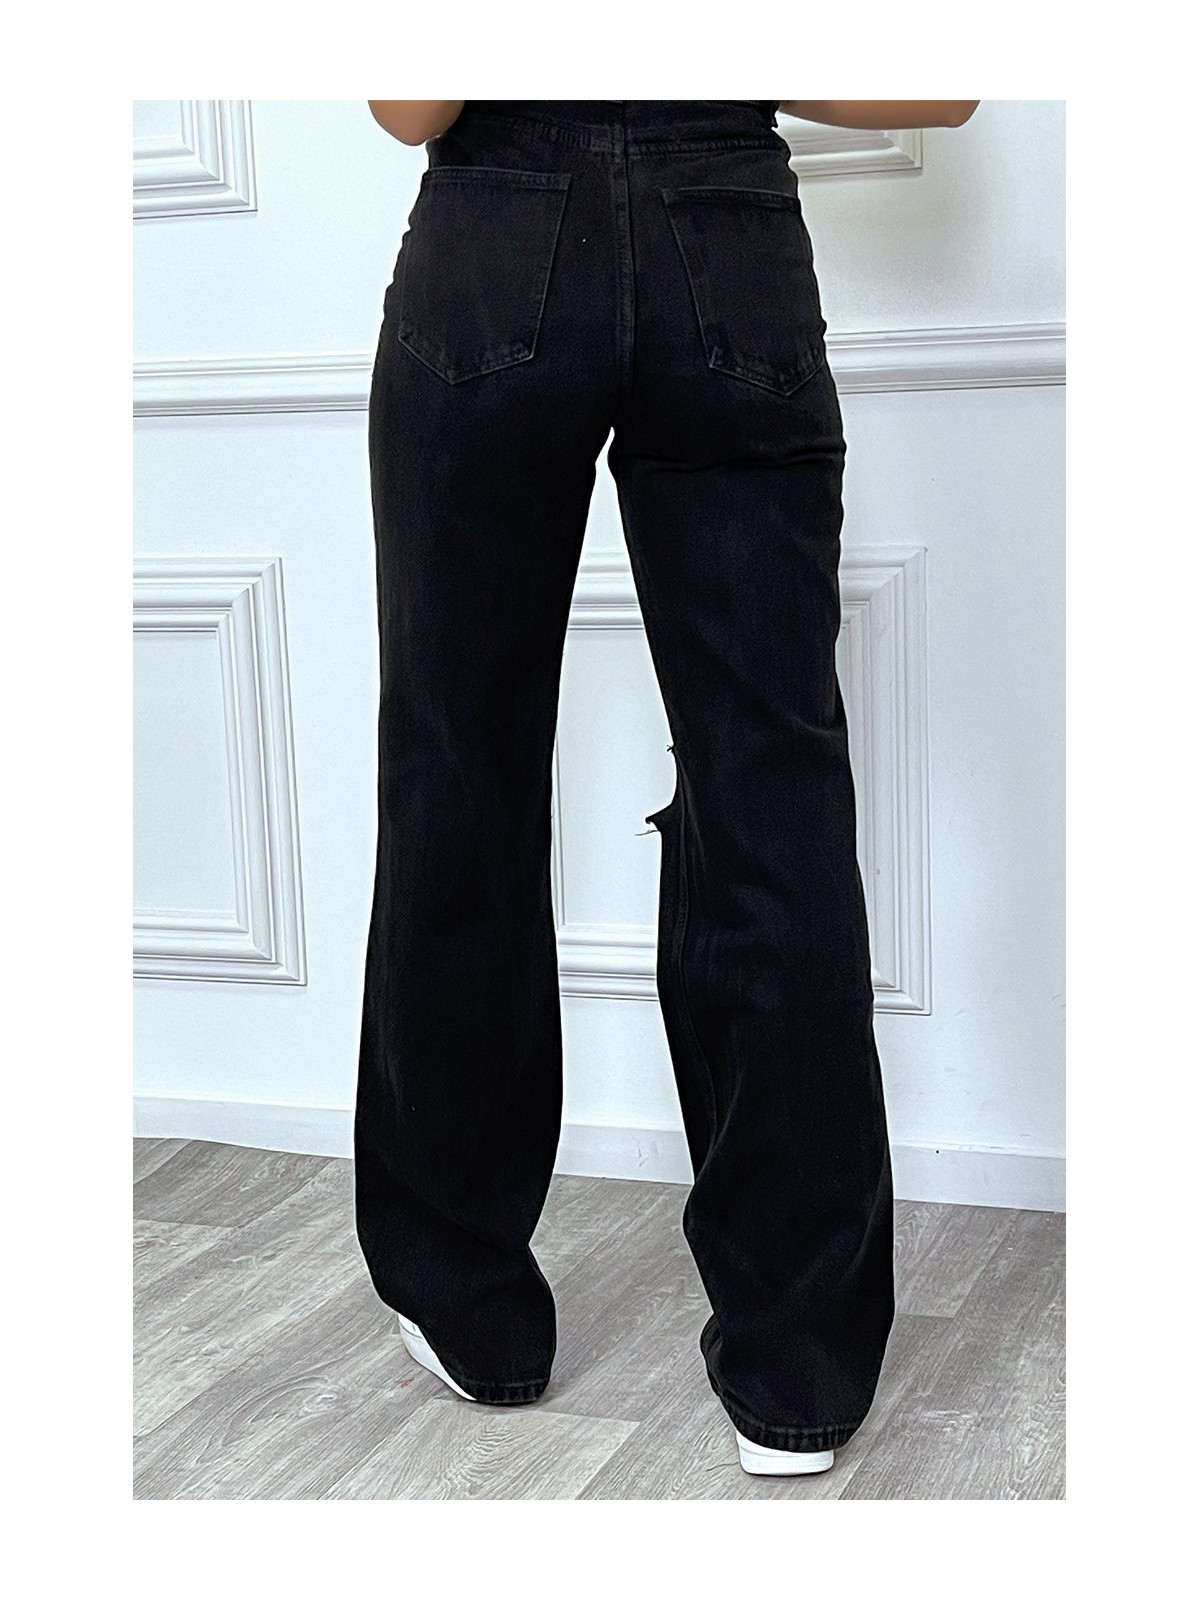 Jeans boot-cut noir taille haute déchiré aux genoux. Jeans hyper tendance 2021 instagram et TikTok - 10